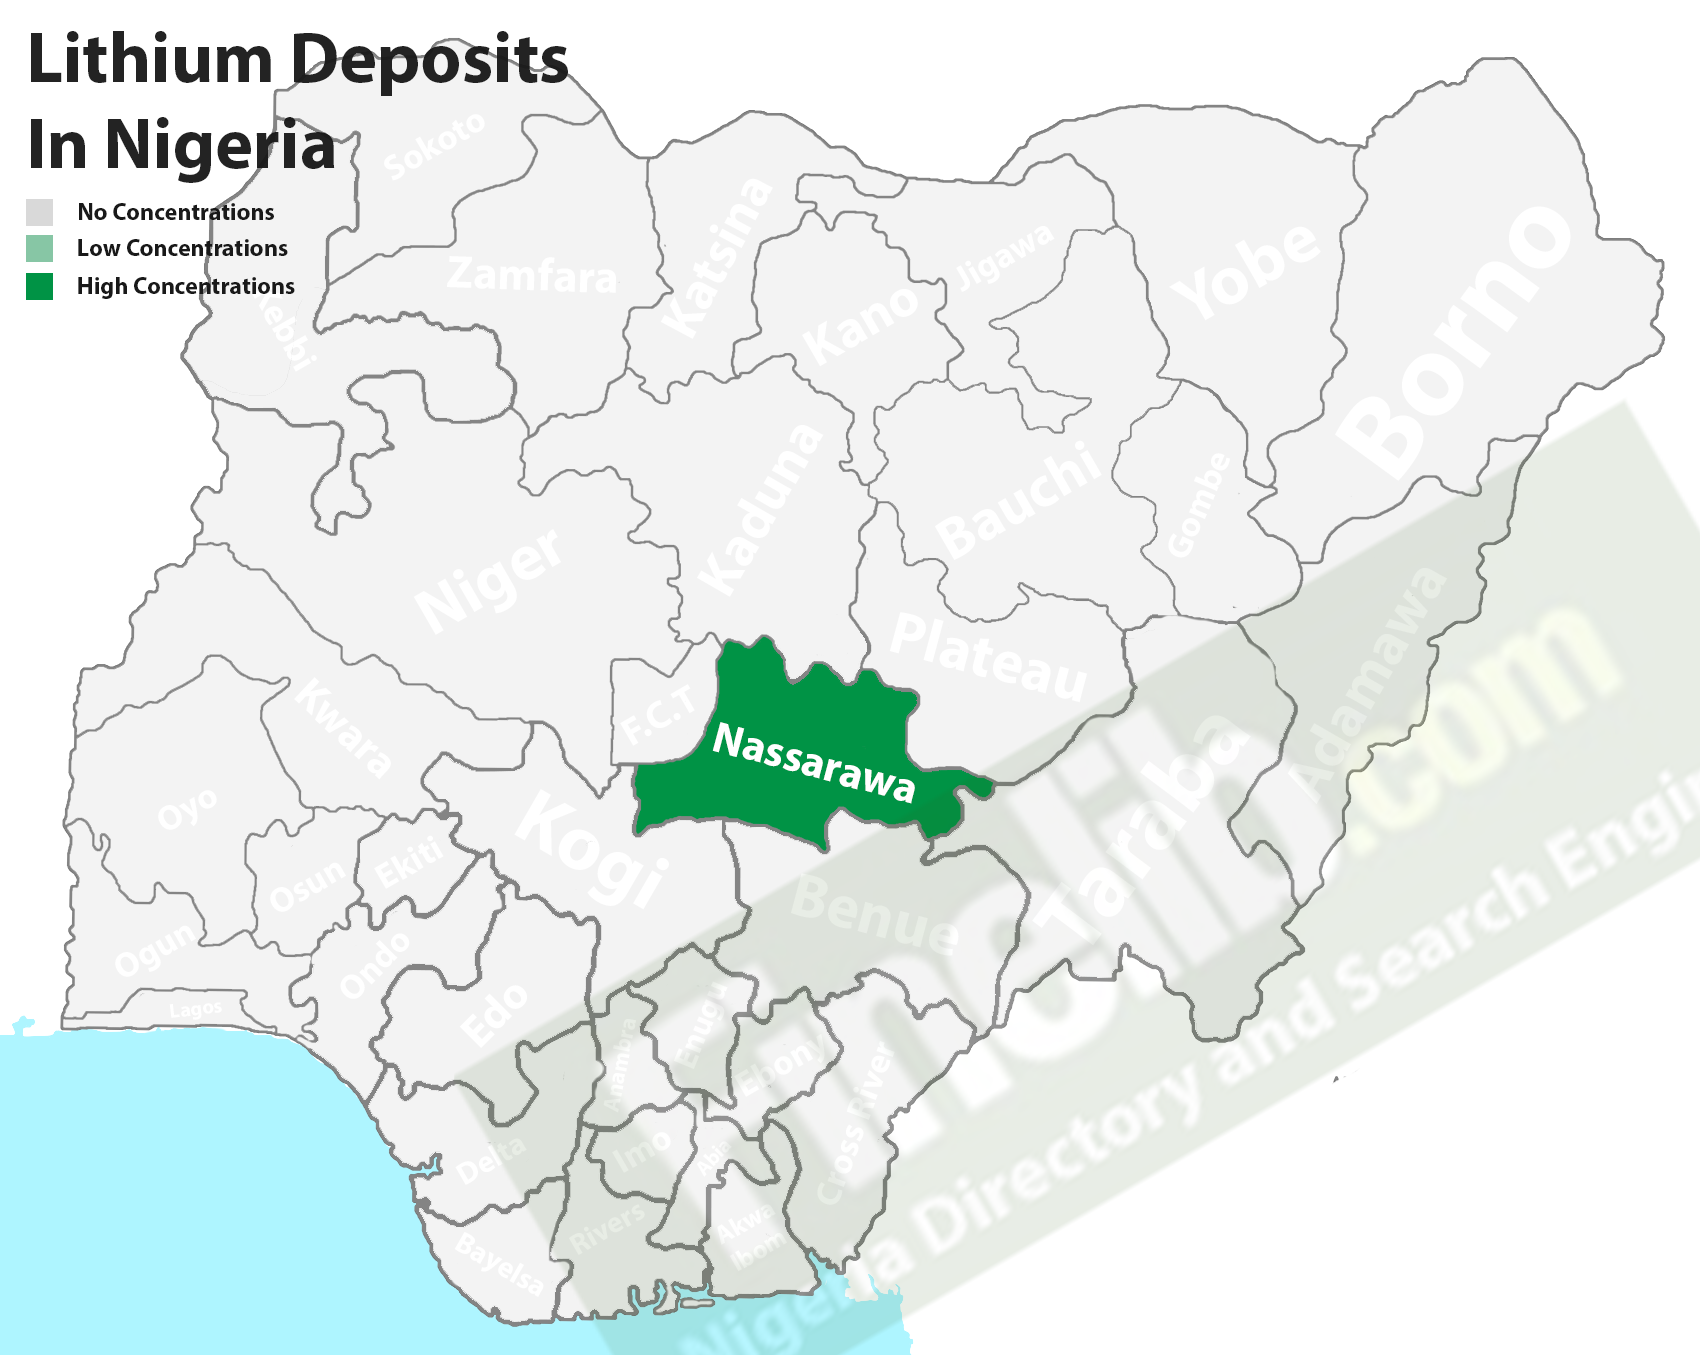 Lithium deposits in Nigeria